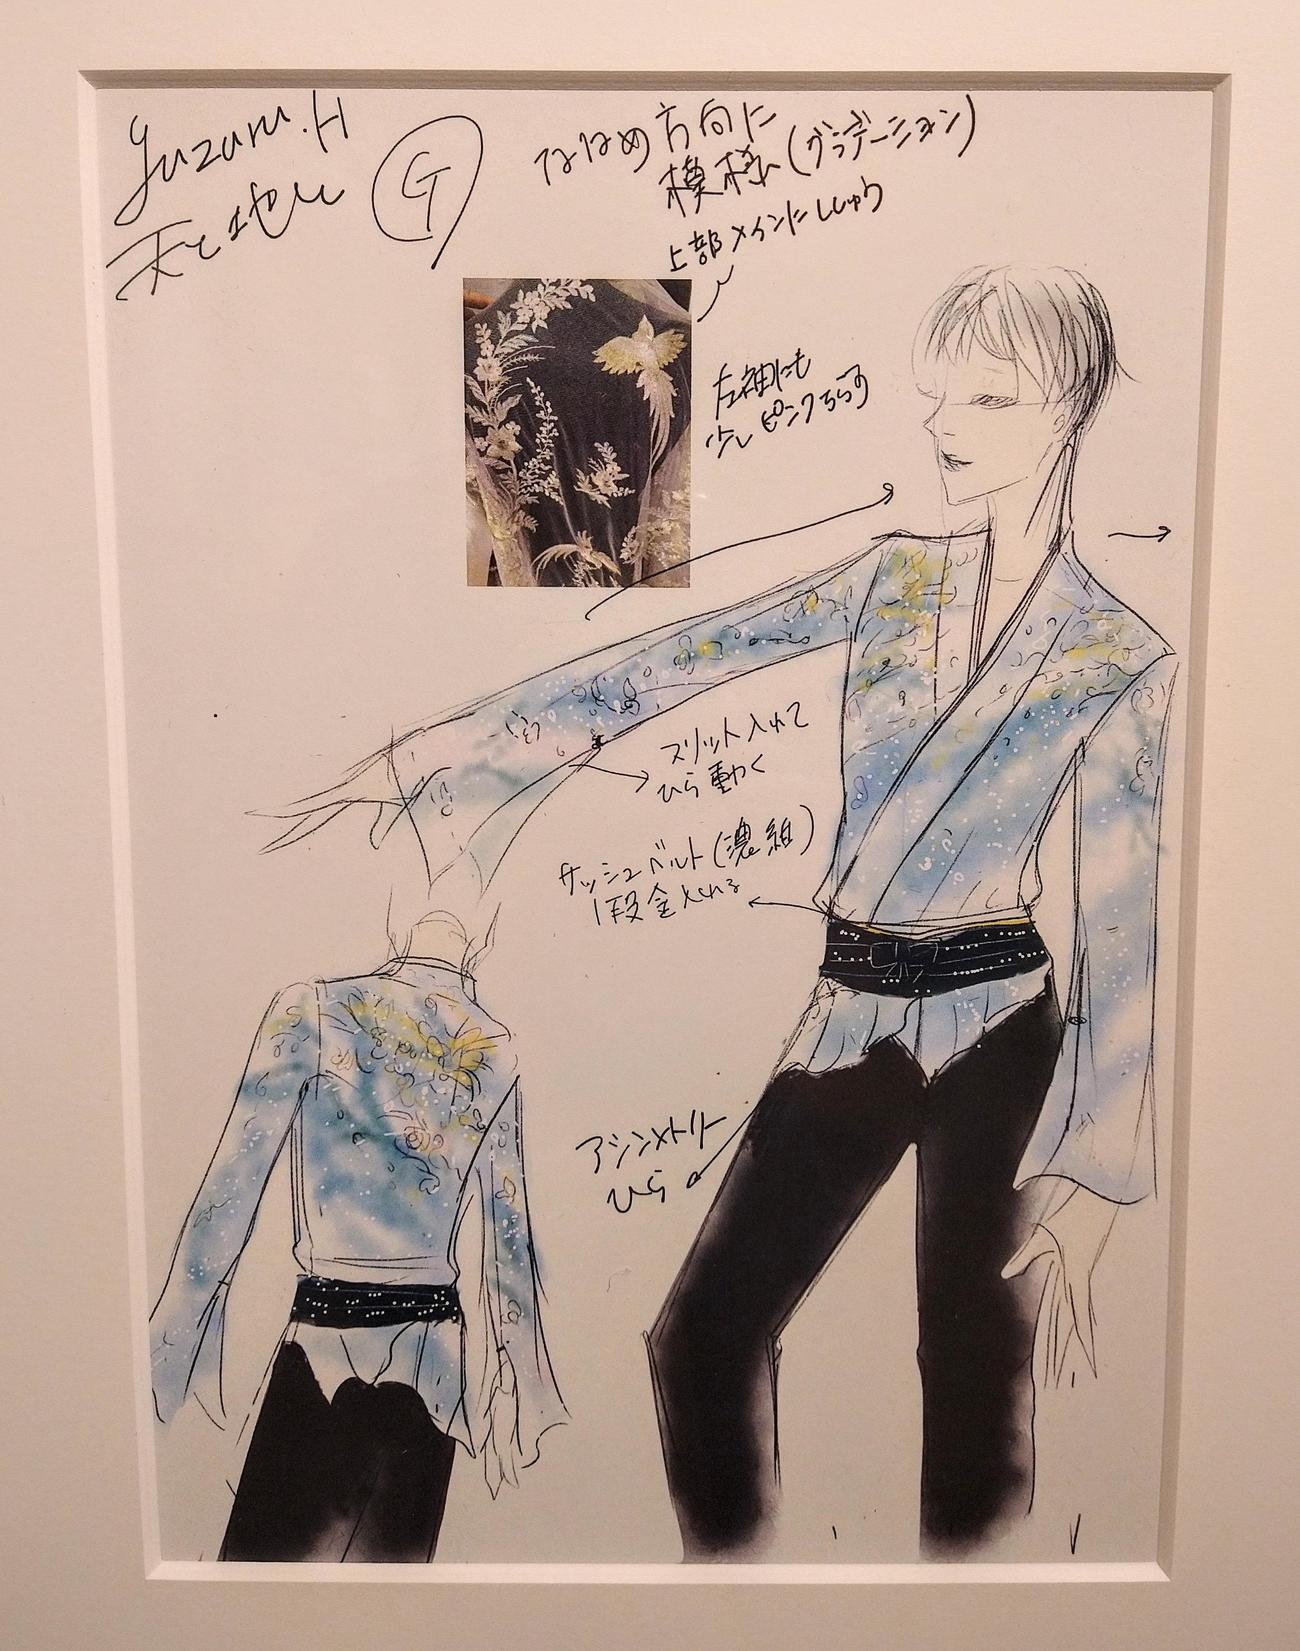 「羽生結弦展2022」で展示されている「天と地と」衣装の伊藤聡美さんデザイン画